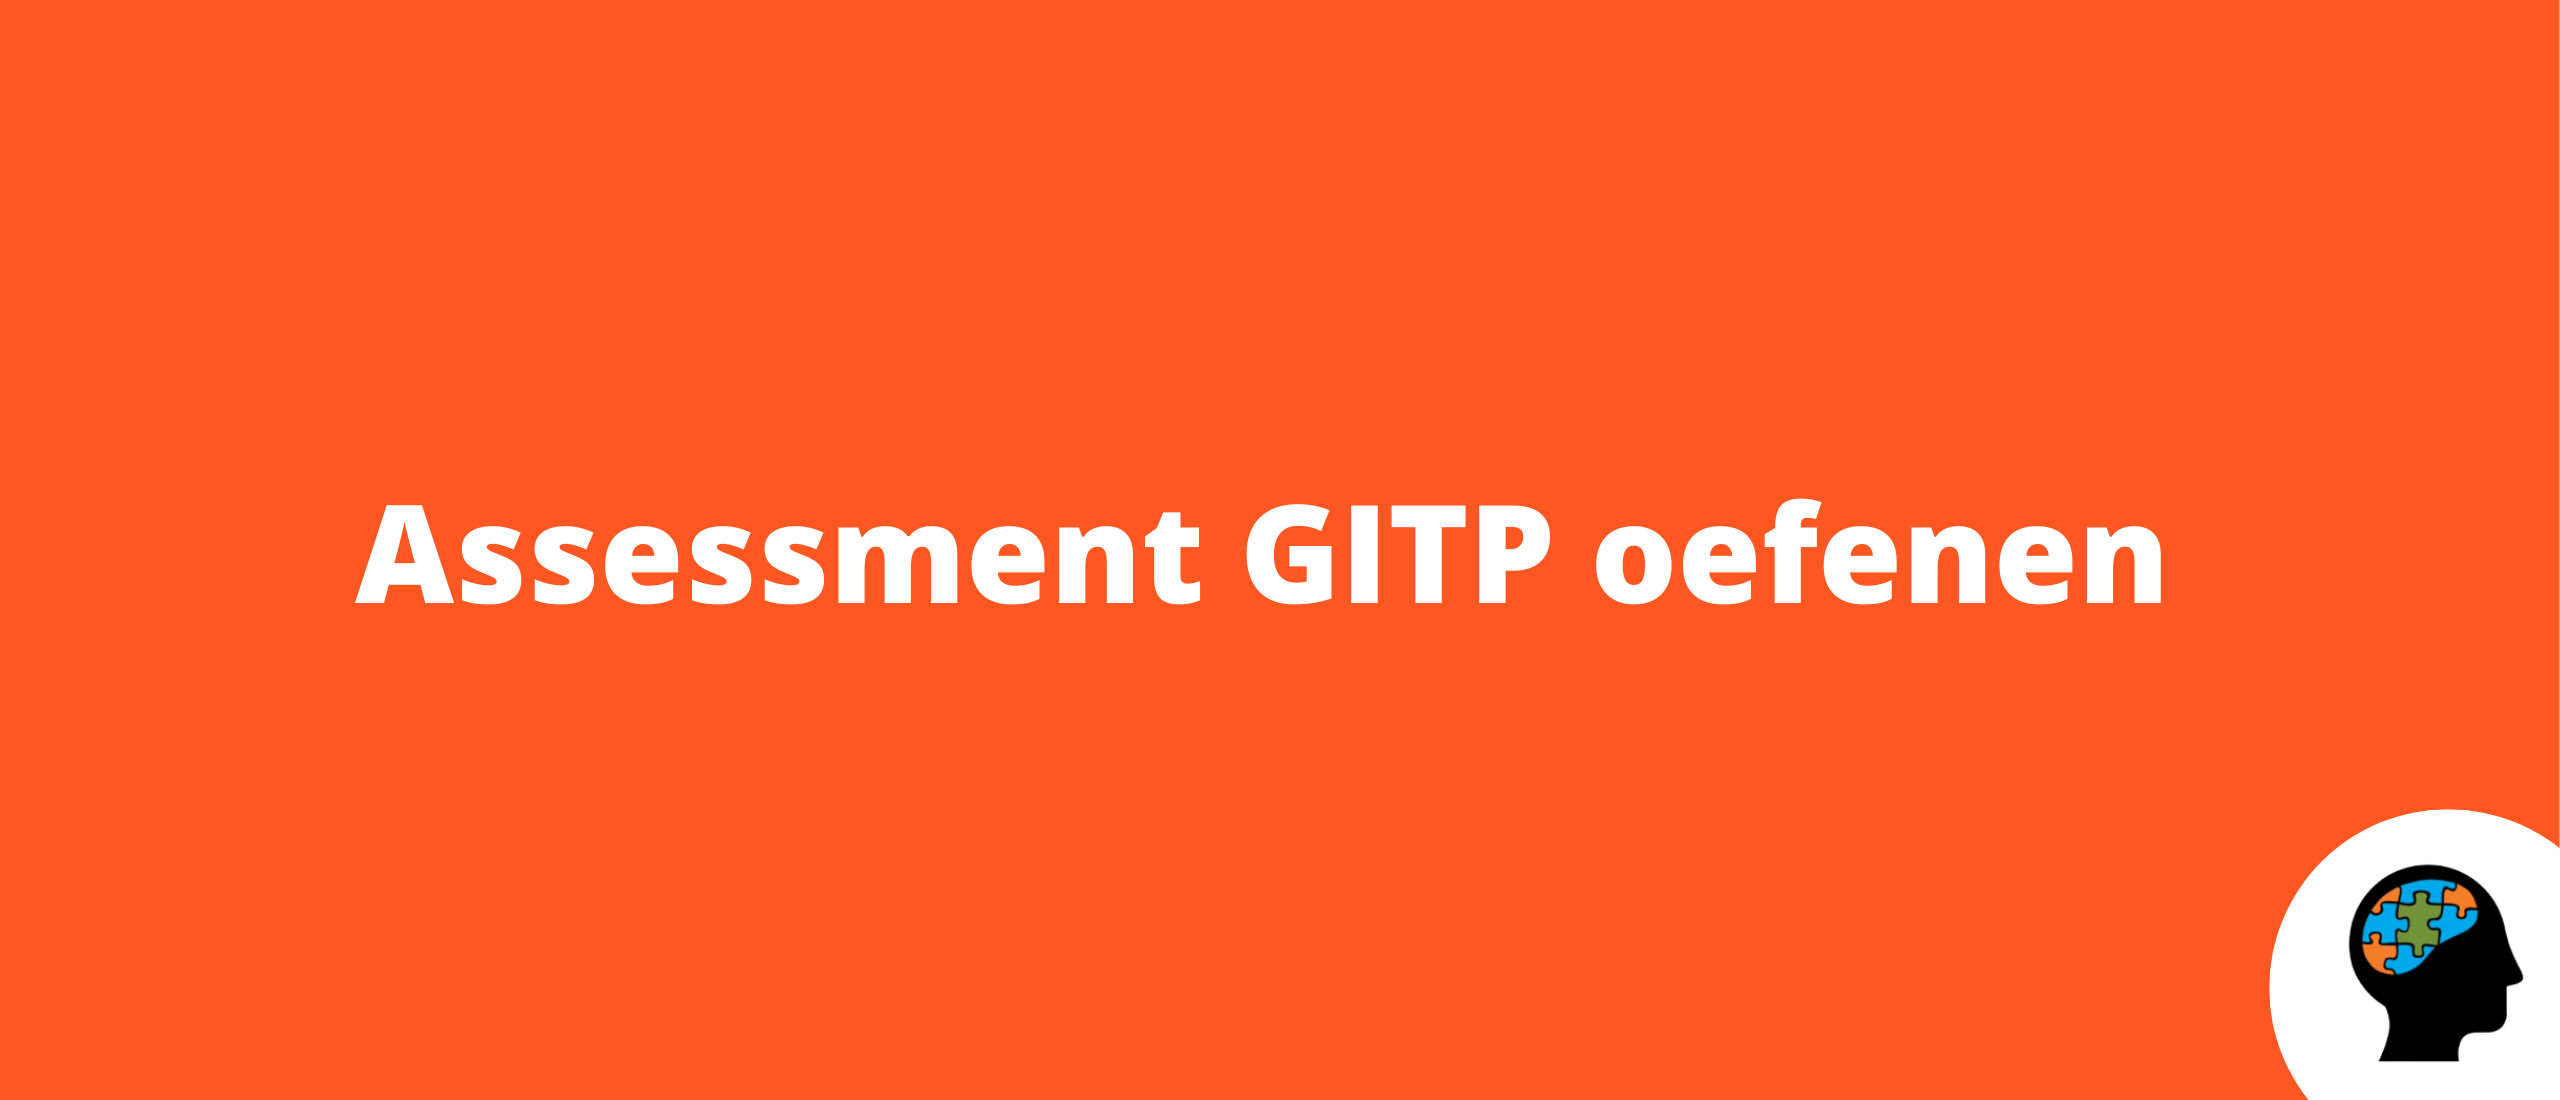 Assessment GITP oefenen